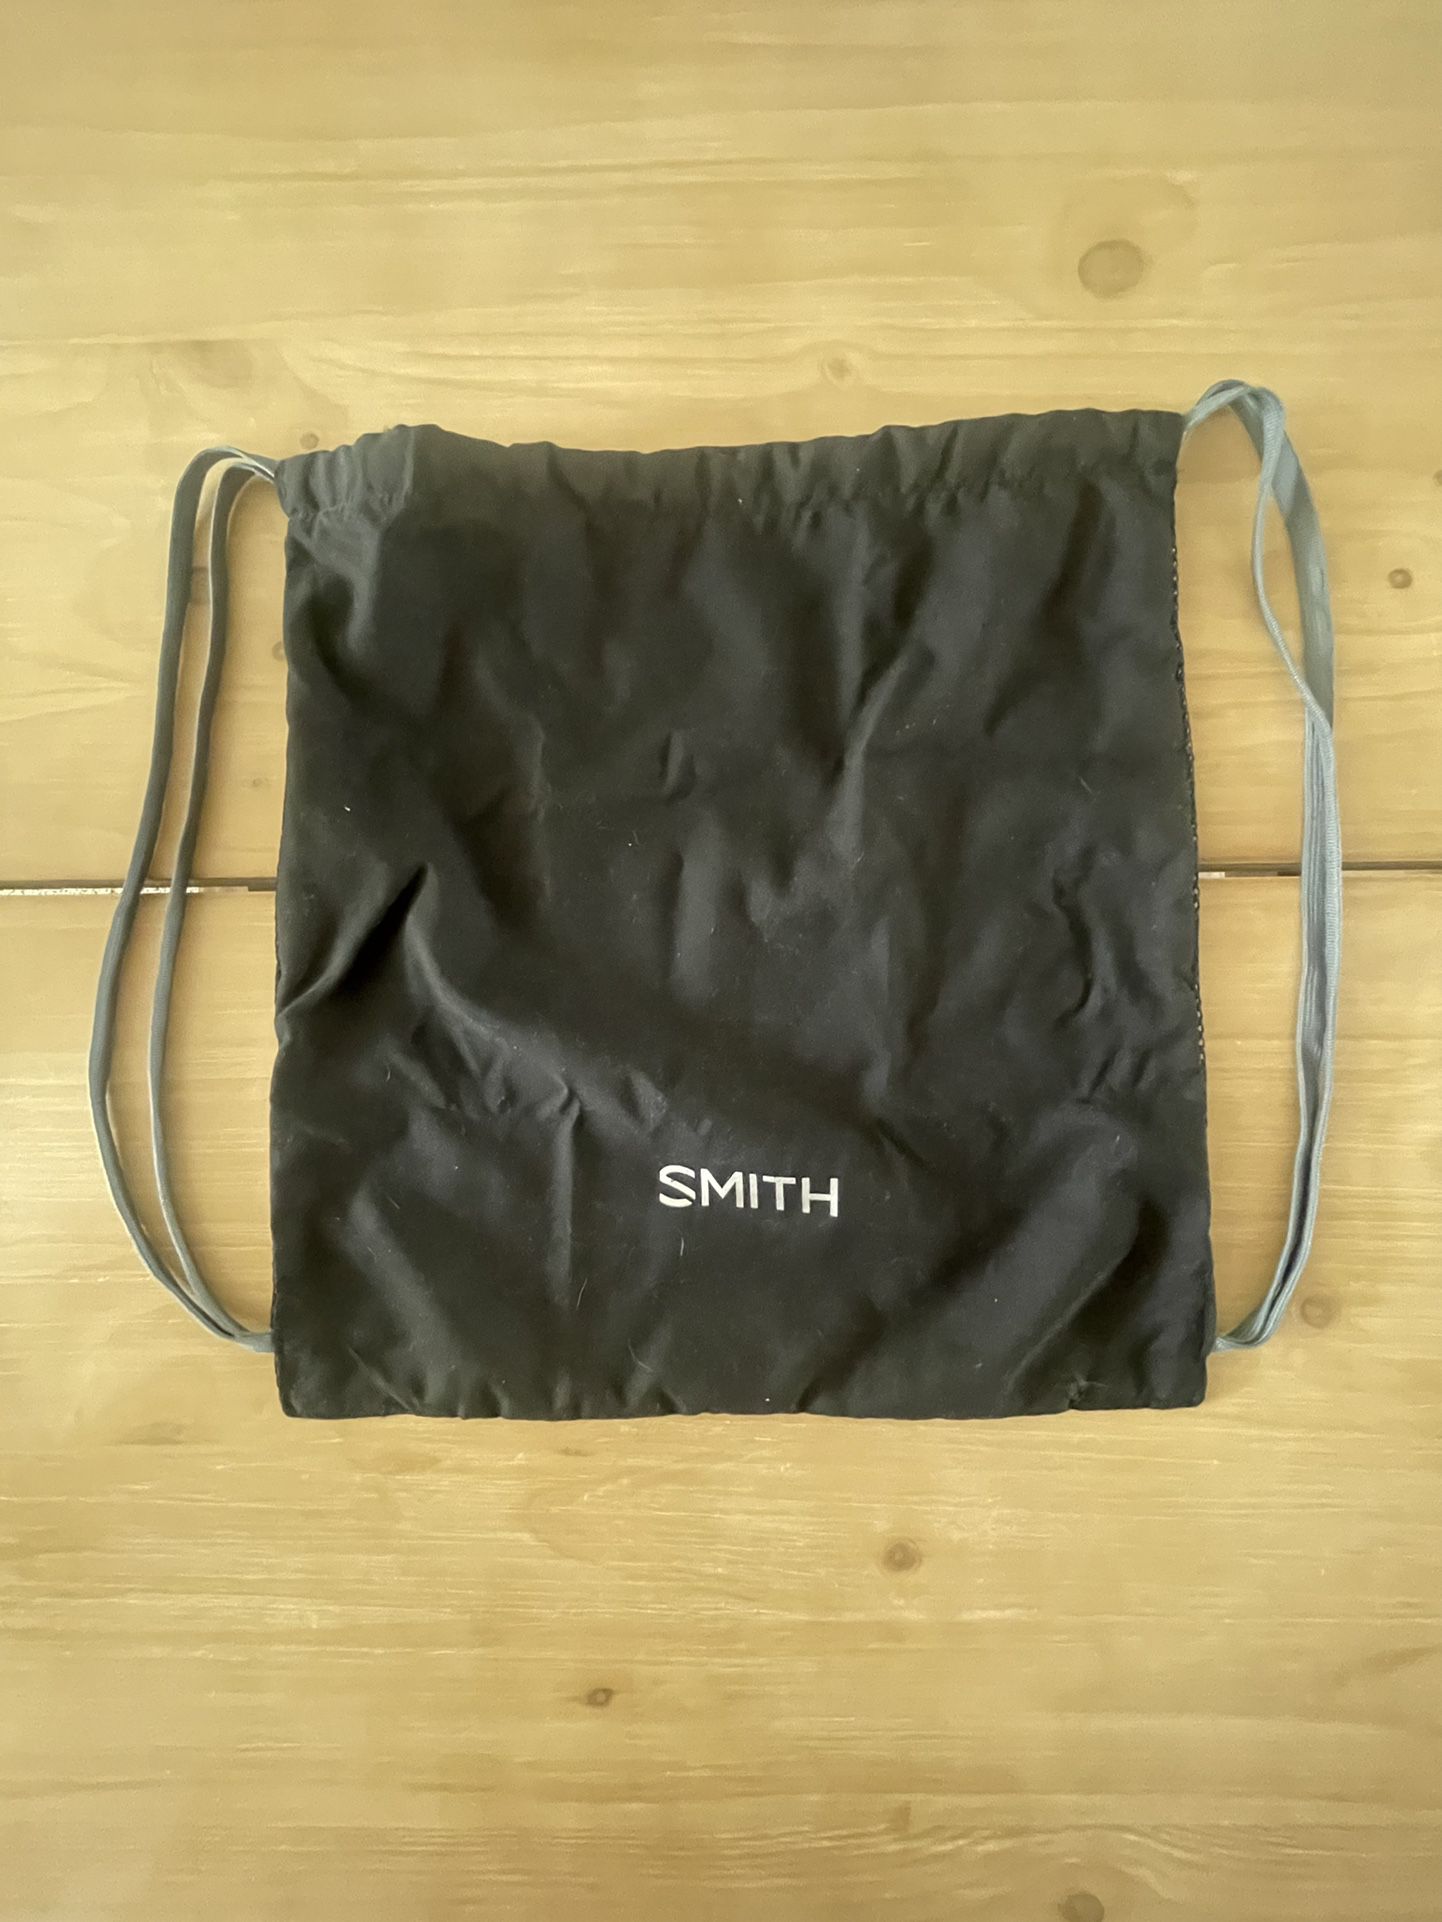 Smith Drawstring Bag